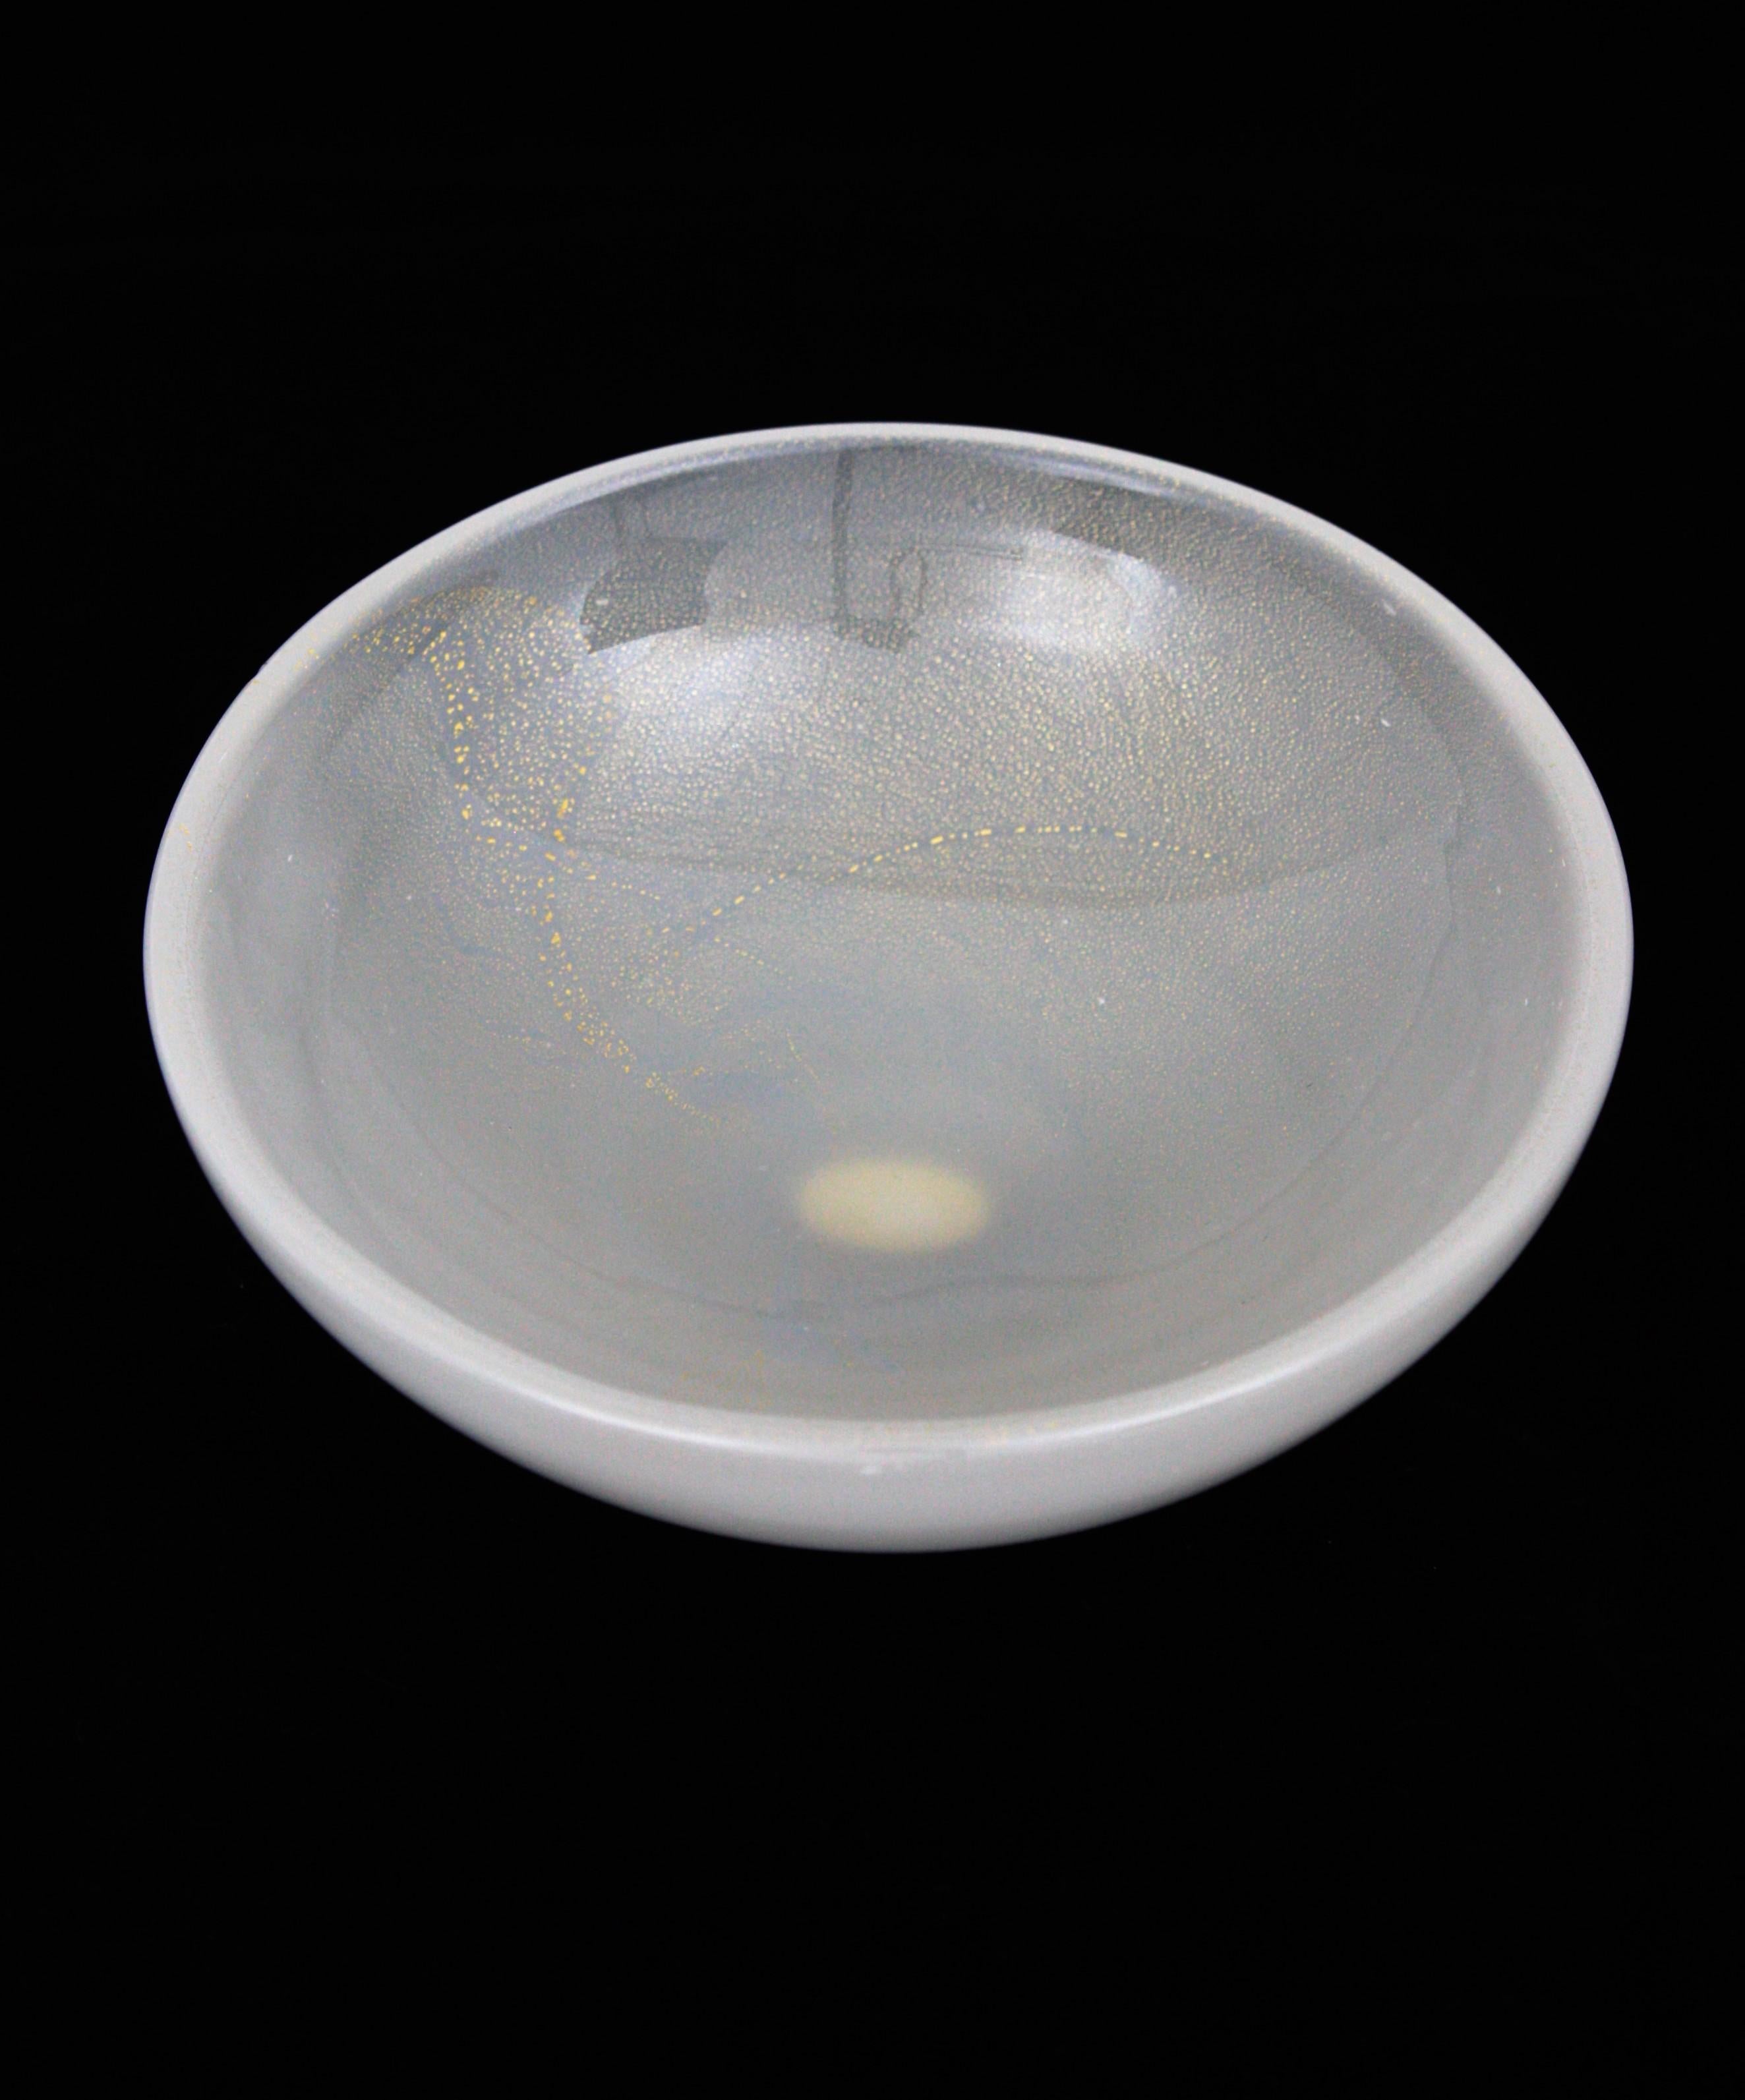 Coupe ronde en verre de Murano blanc opalescent avec poussière d'or fabriquée par Archimede Seguso. Italie, années 1950.
Ce magnifique bol en verre soufflé à la bouche de Murano peut être utilisé comme bol à bagues, vide-poche, bol à bonbons ou